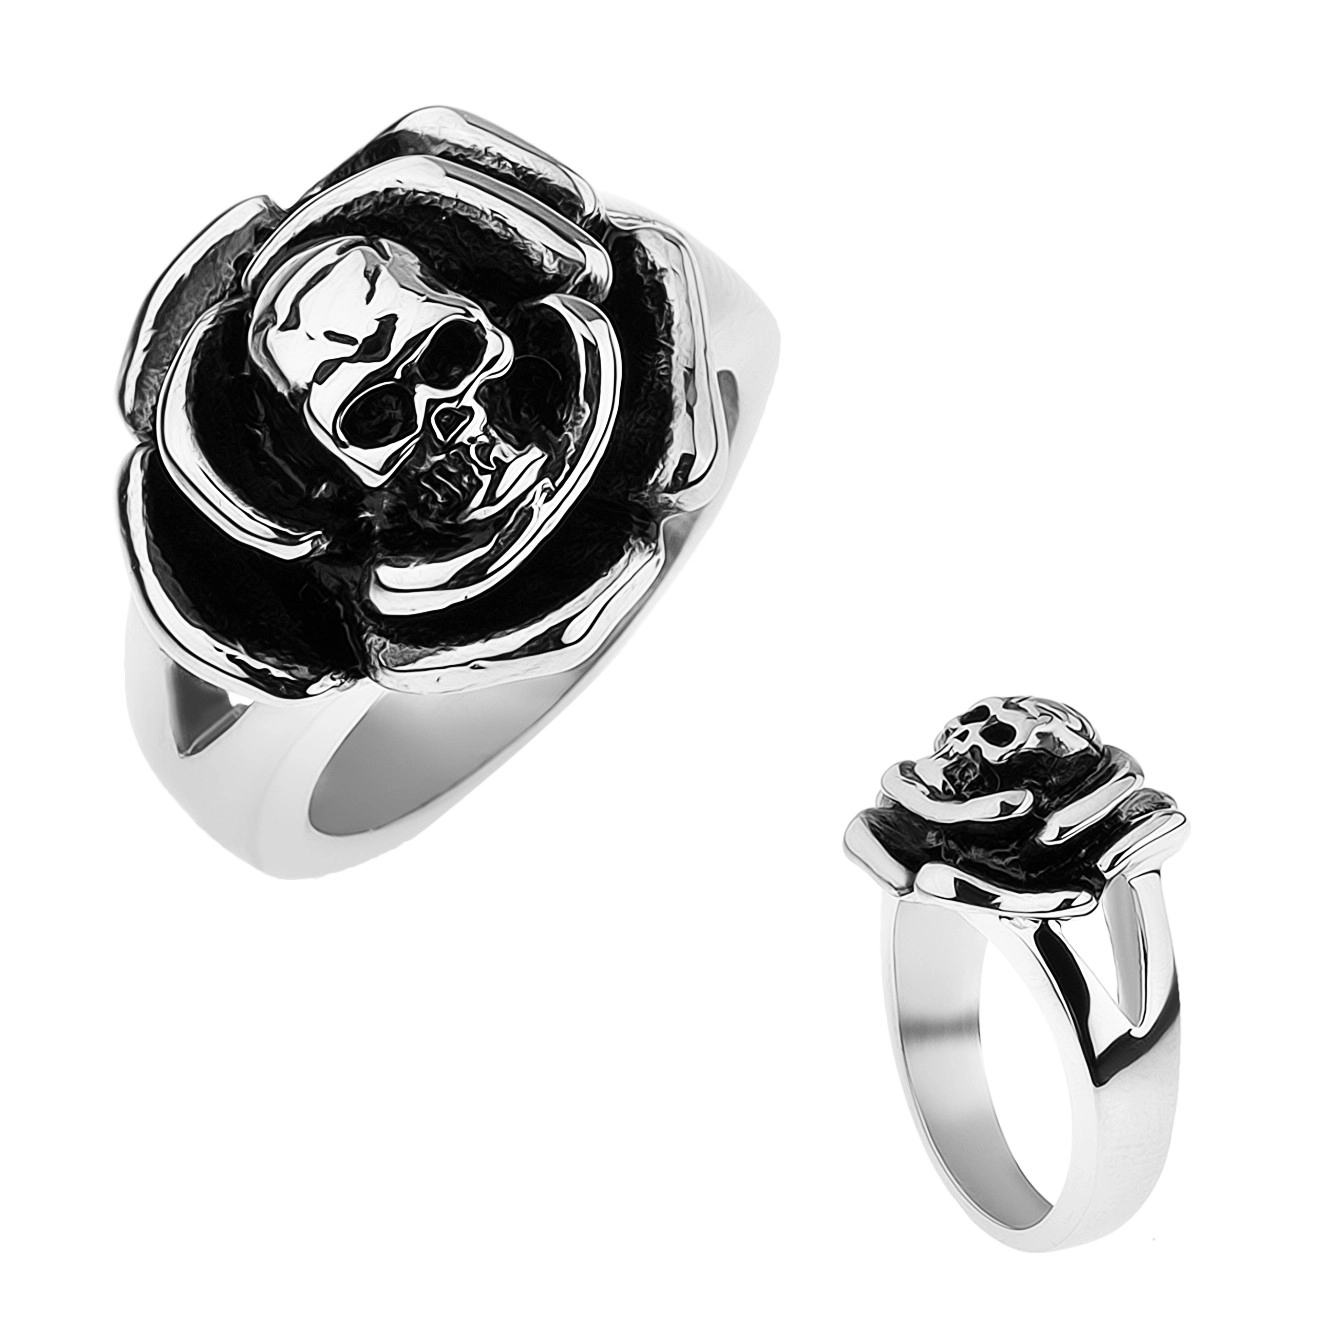 Patinovaný oceľový prsteň, ruža s lebkou v strede, rozdvojené ramená - Veľkosť: 69 mm